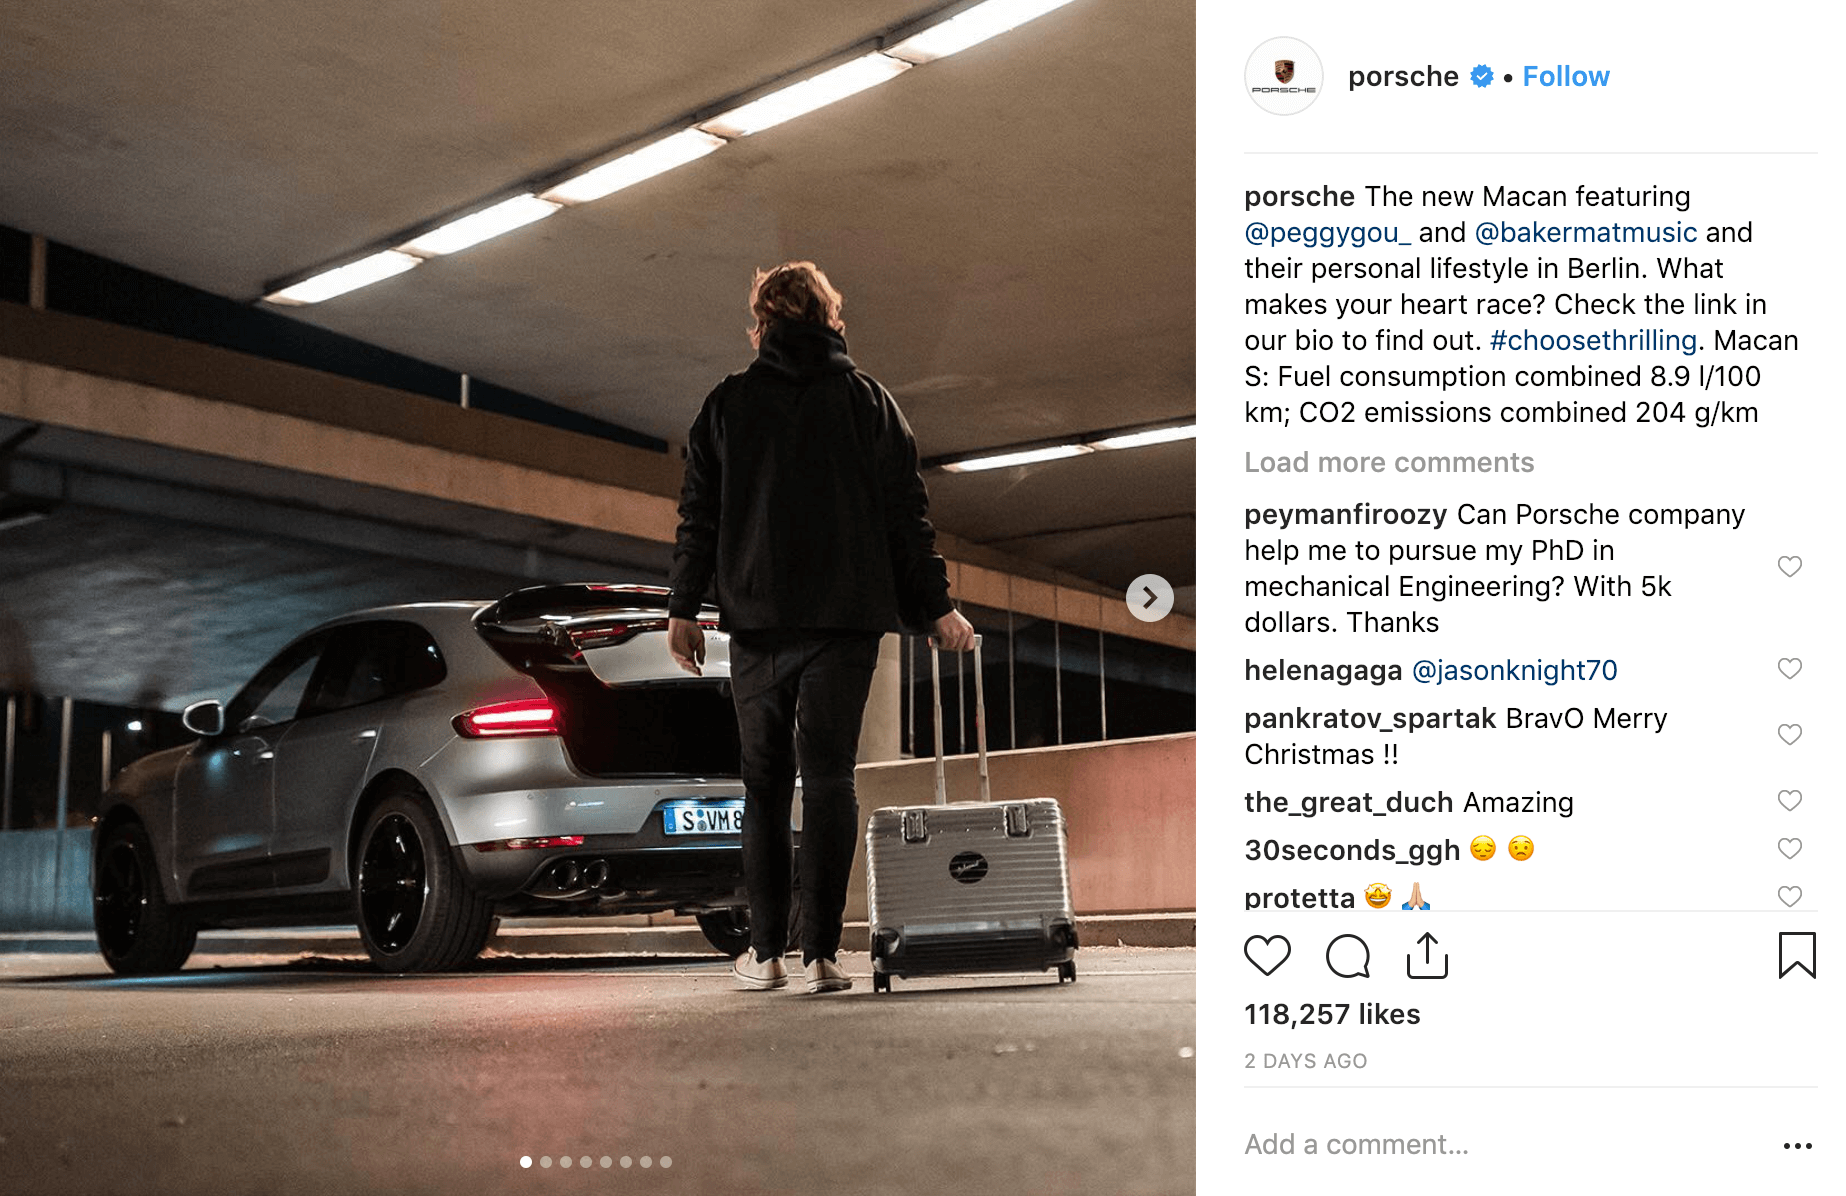 Porsche Instagram Influencer Marketing